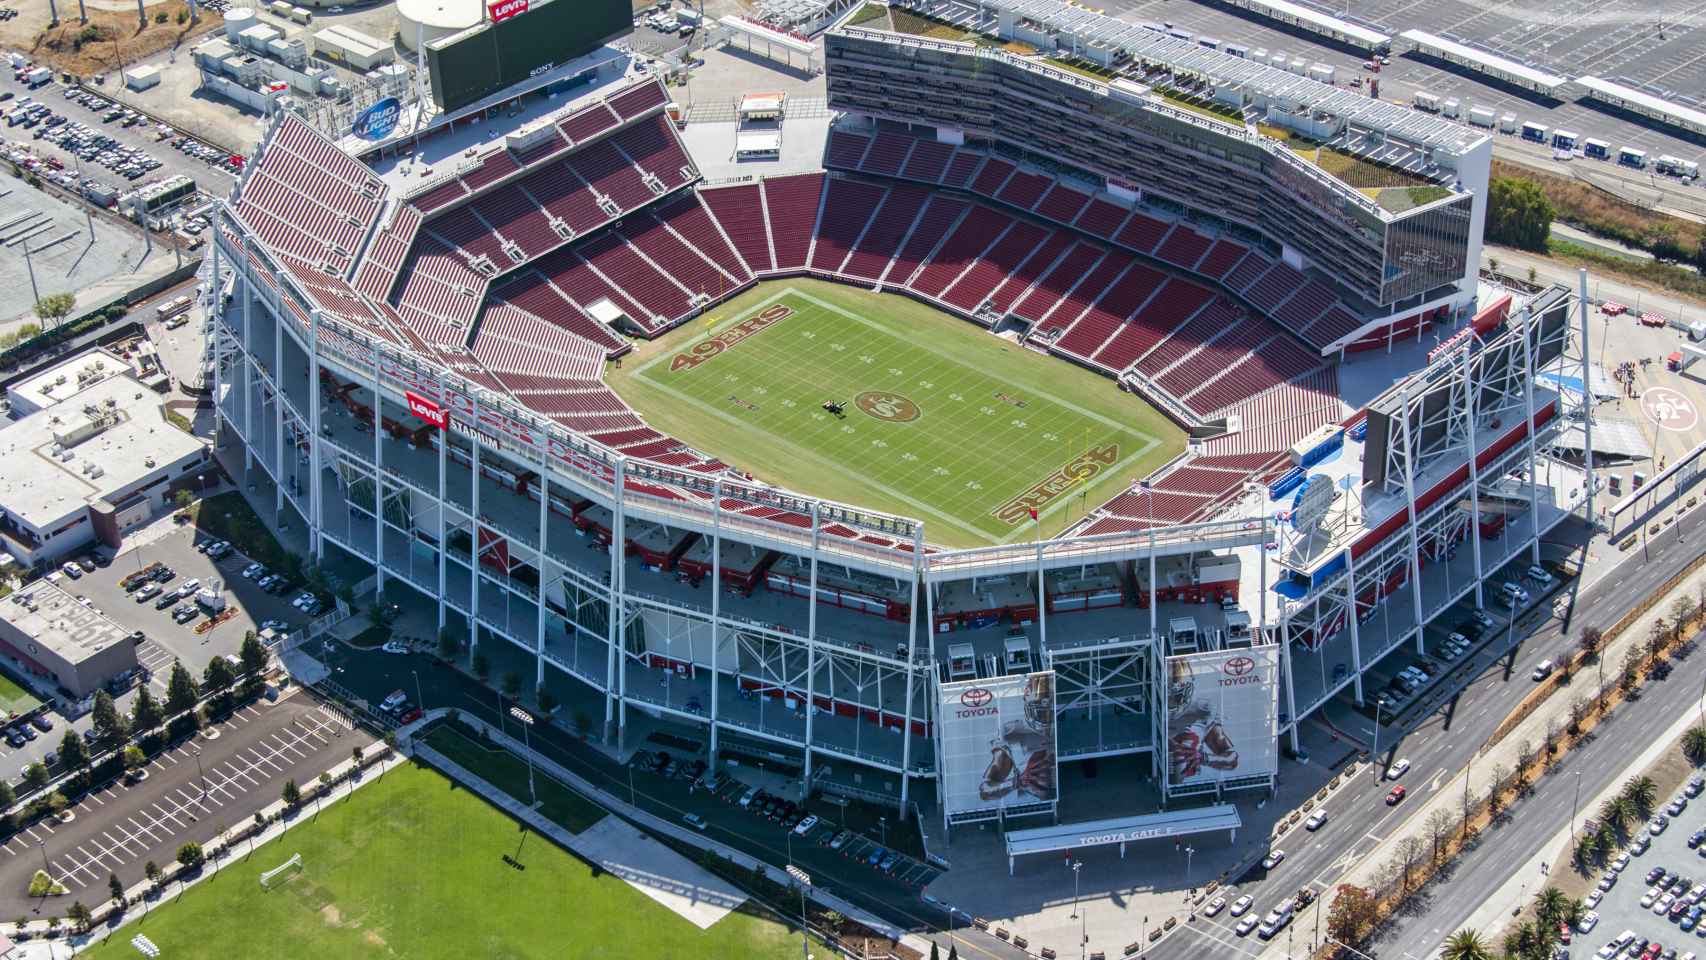 Vista aérea del Lewi’s Stadium, en Santa Clara (California), construido por Turner